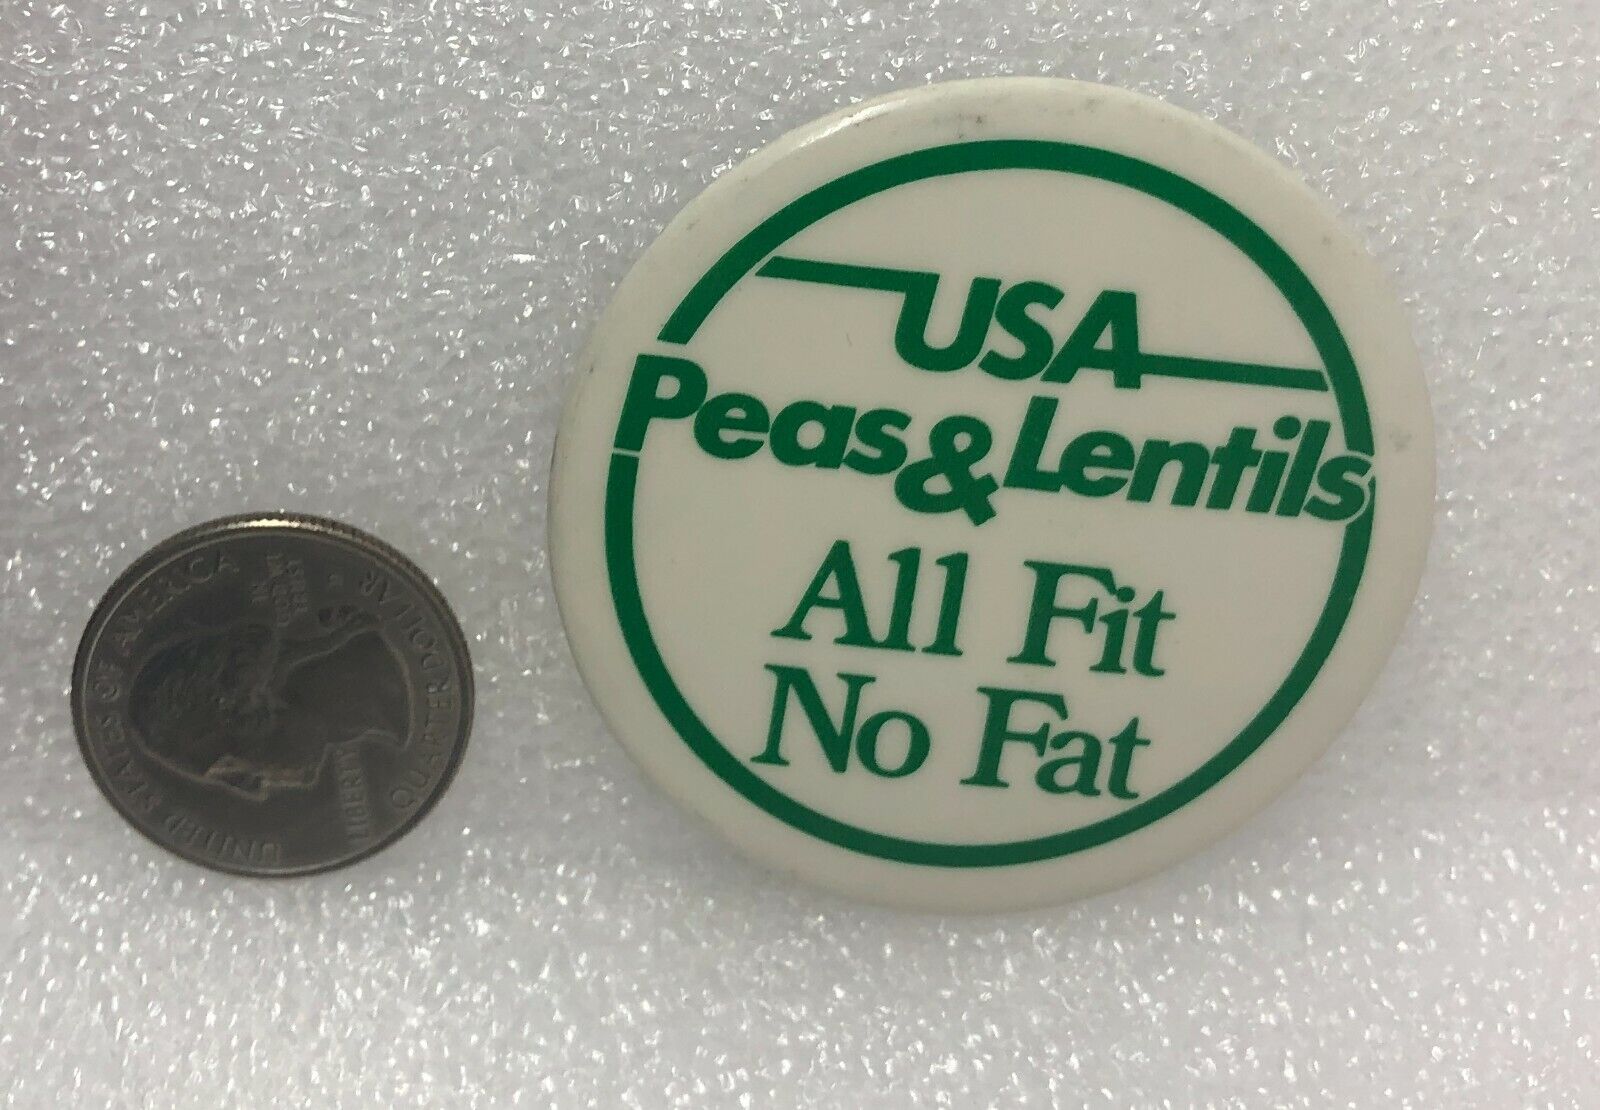 USA Peas & Lentils All Fit No Fat Pin